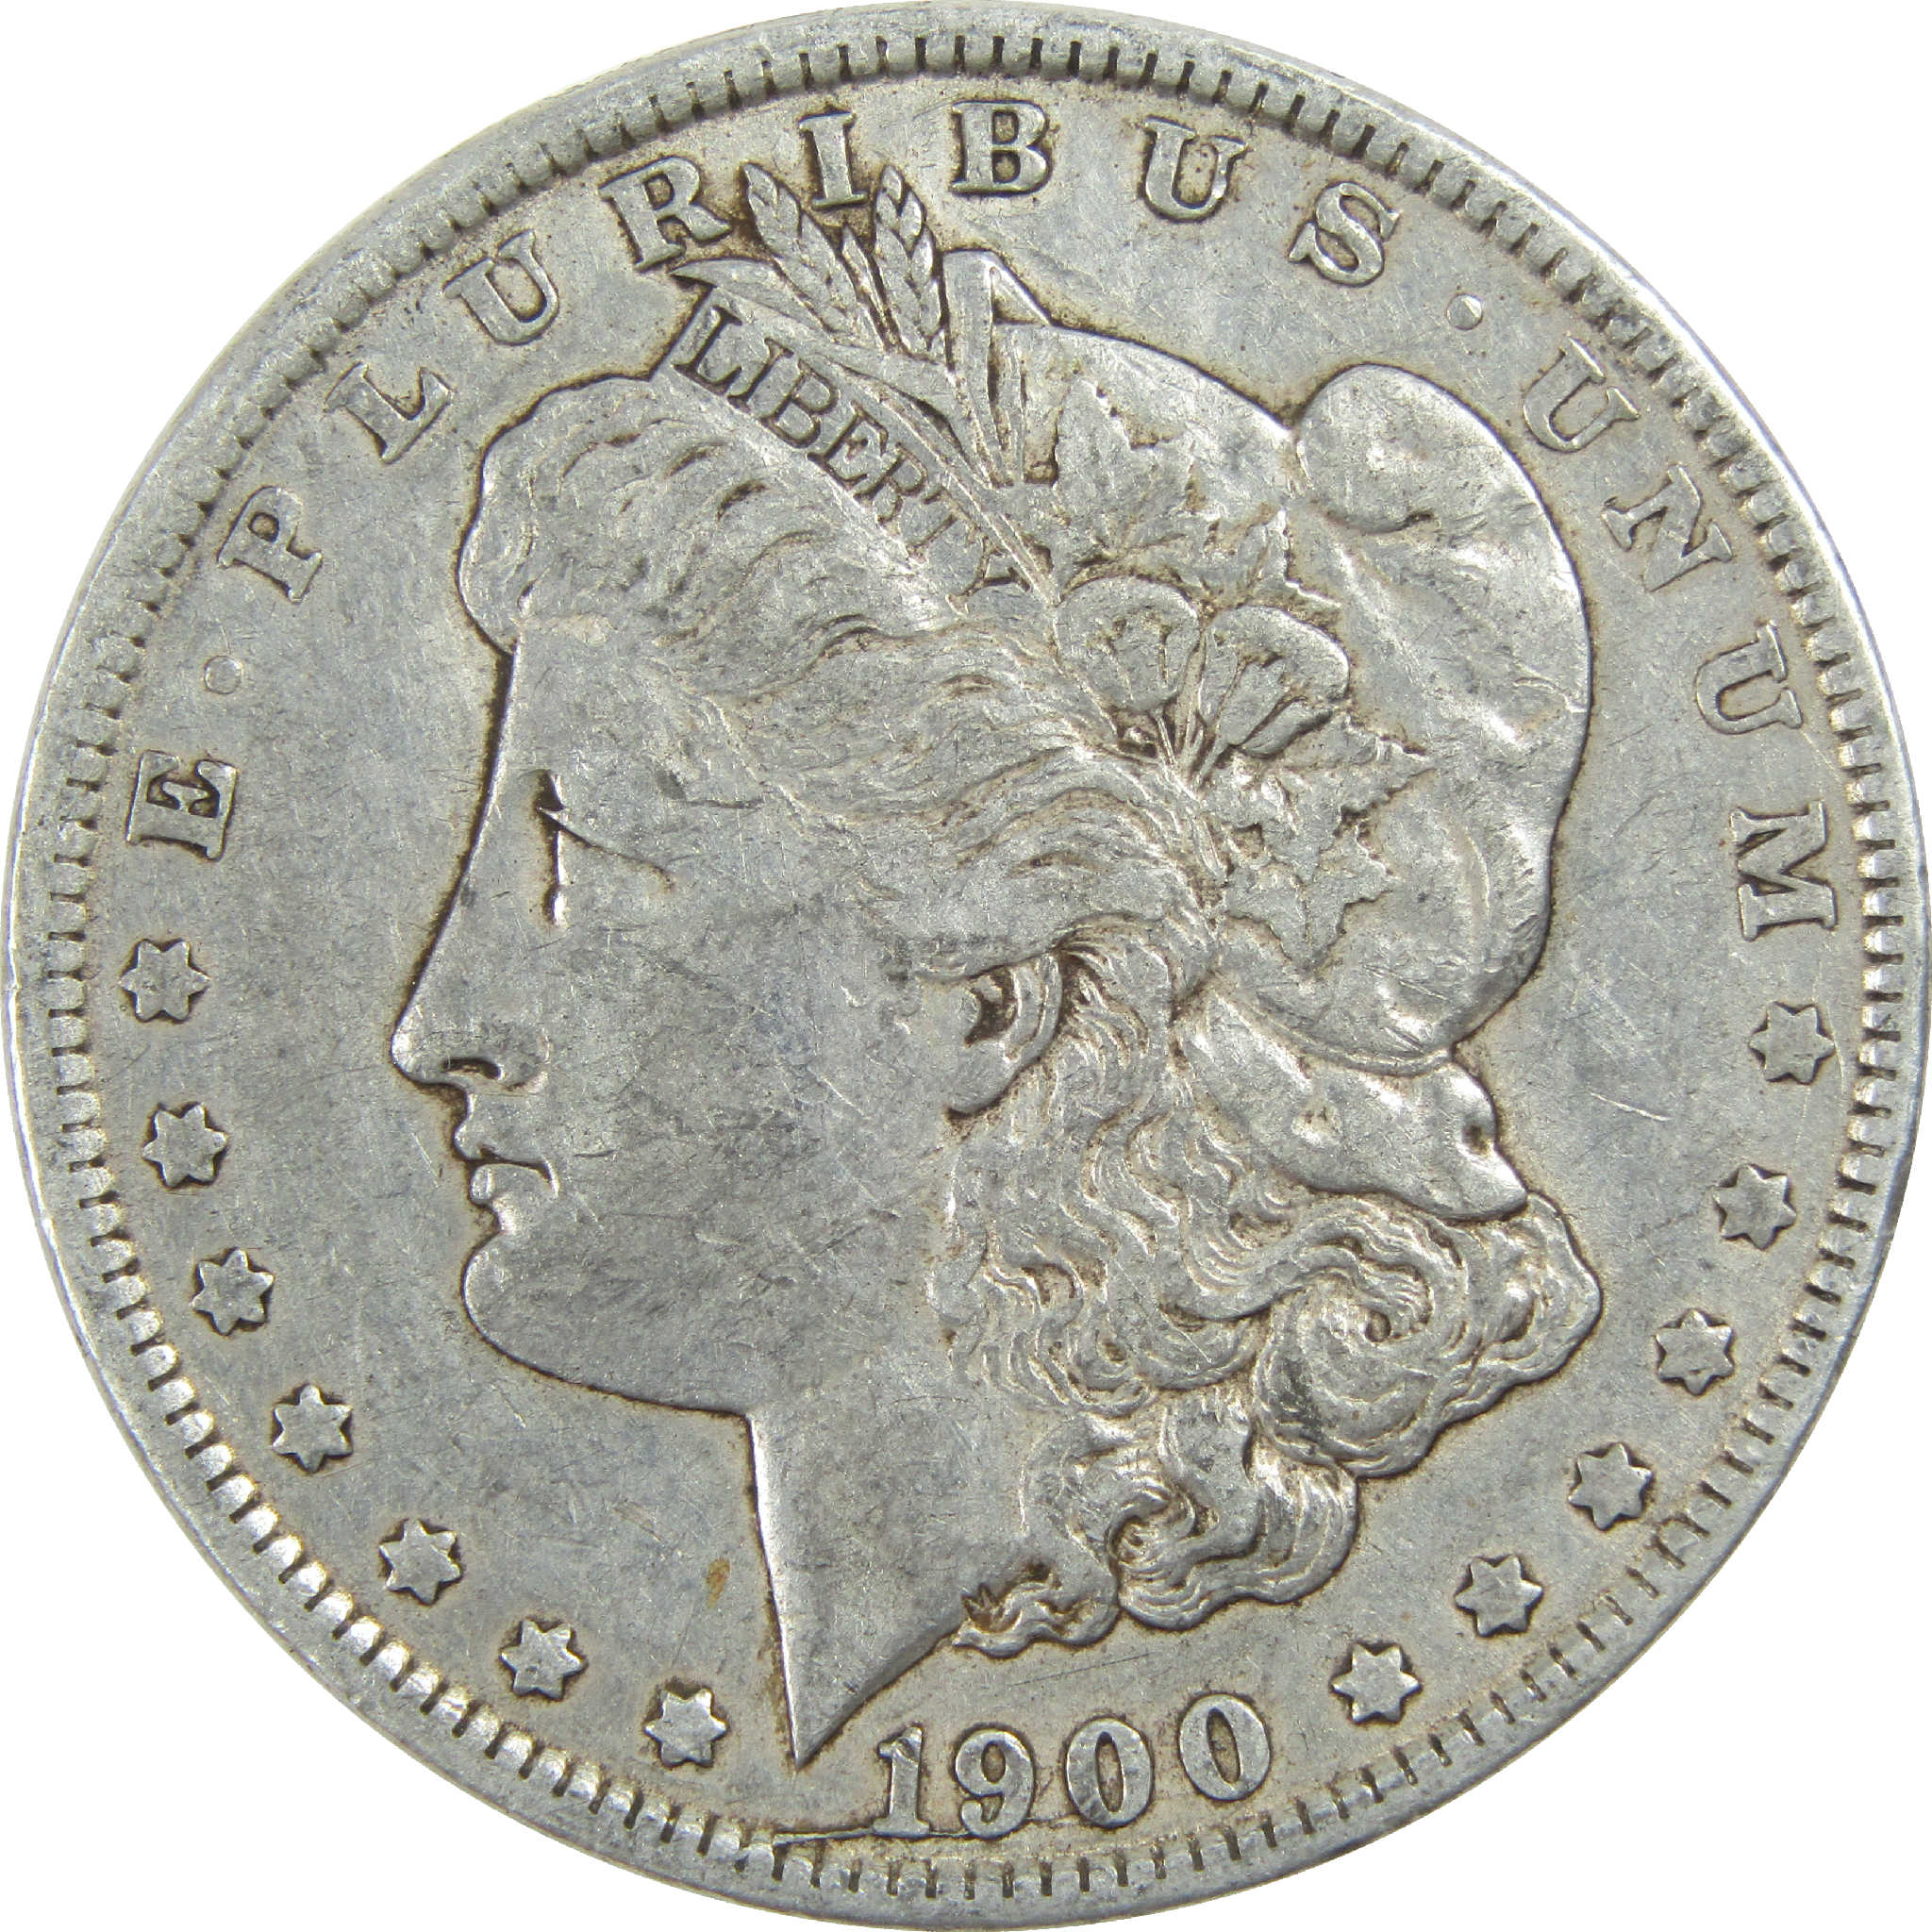 1900 O Morgan Dollar VF Very Fine Silver $1 Coin SKU:I13229 - Morgan coin - Morgan silver dollar - Morgan silver dollar for sale - Profile Coins &amp; Collectibles